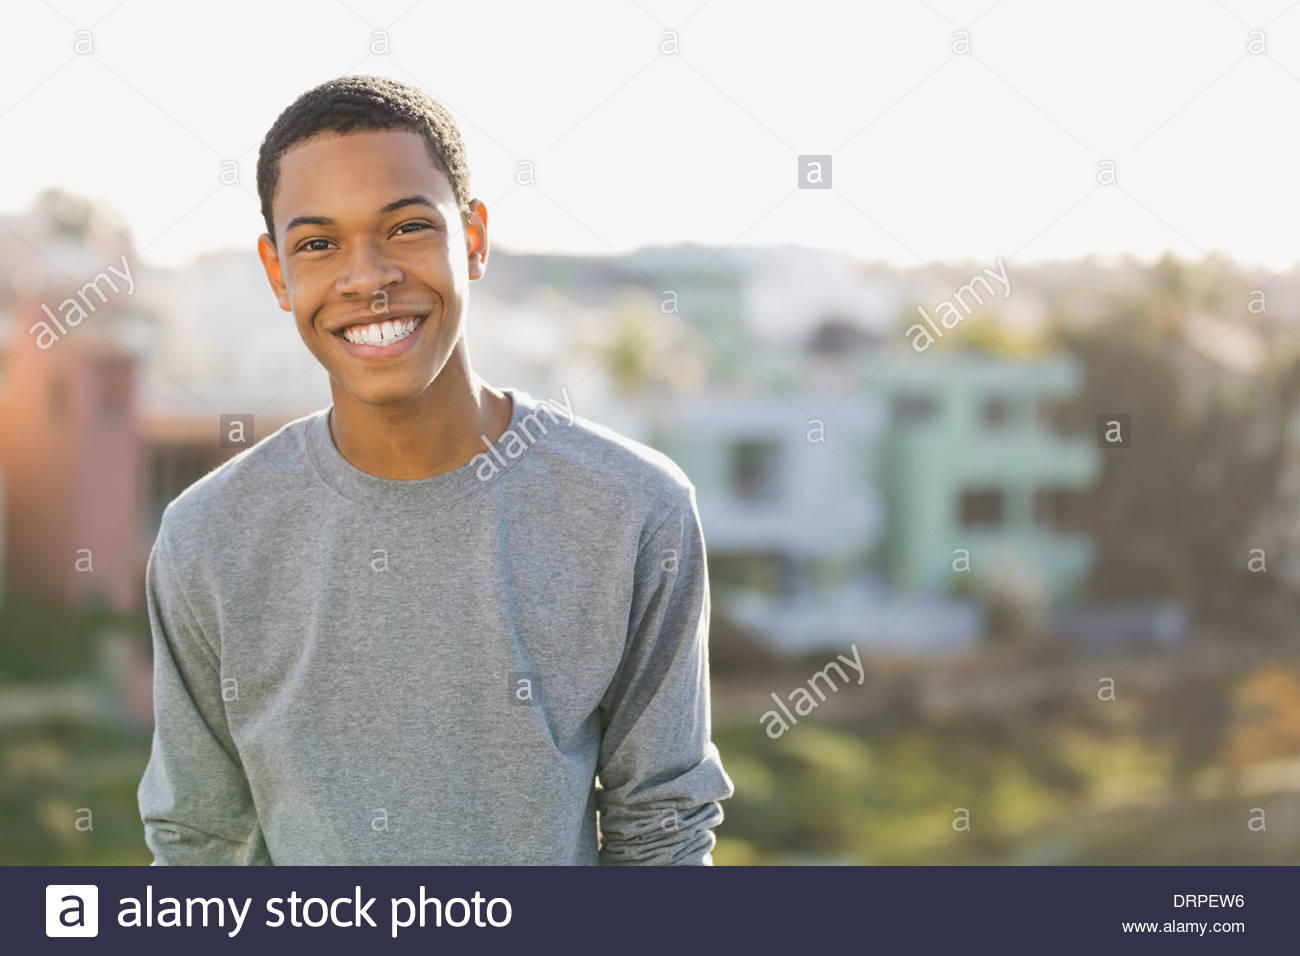 Porträt von lächelnden jungen Mann im freien Stockfoto